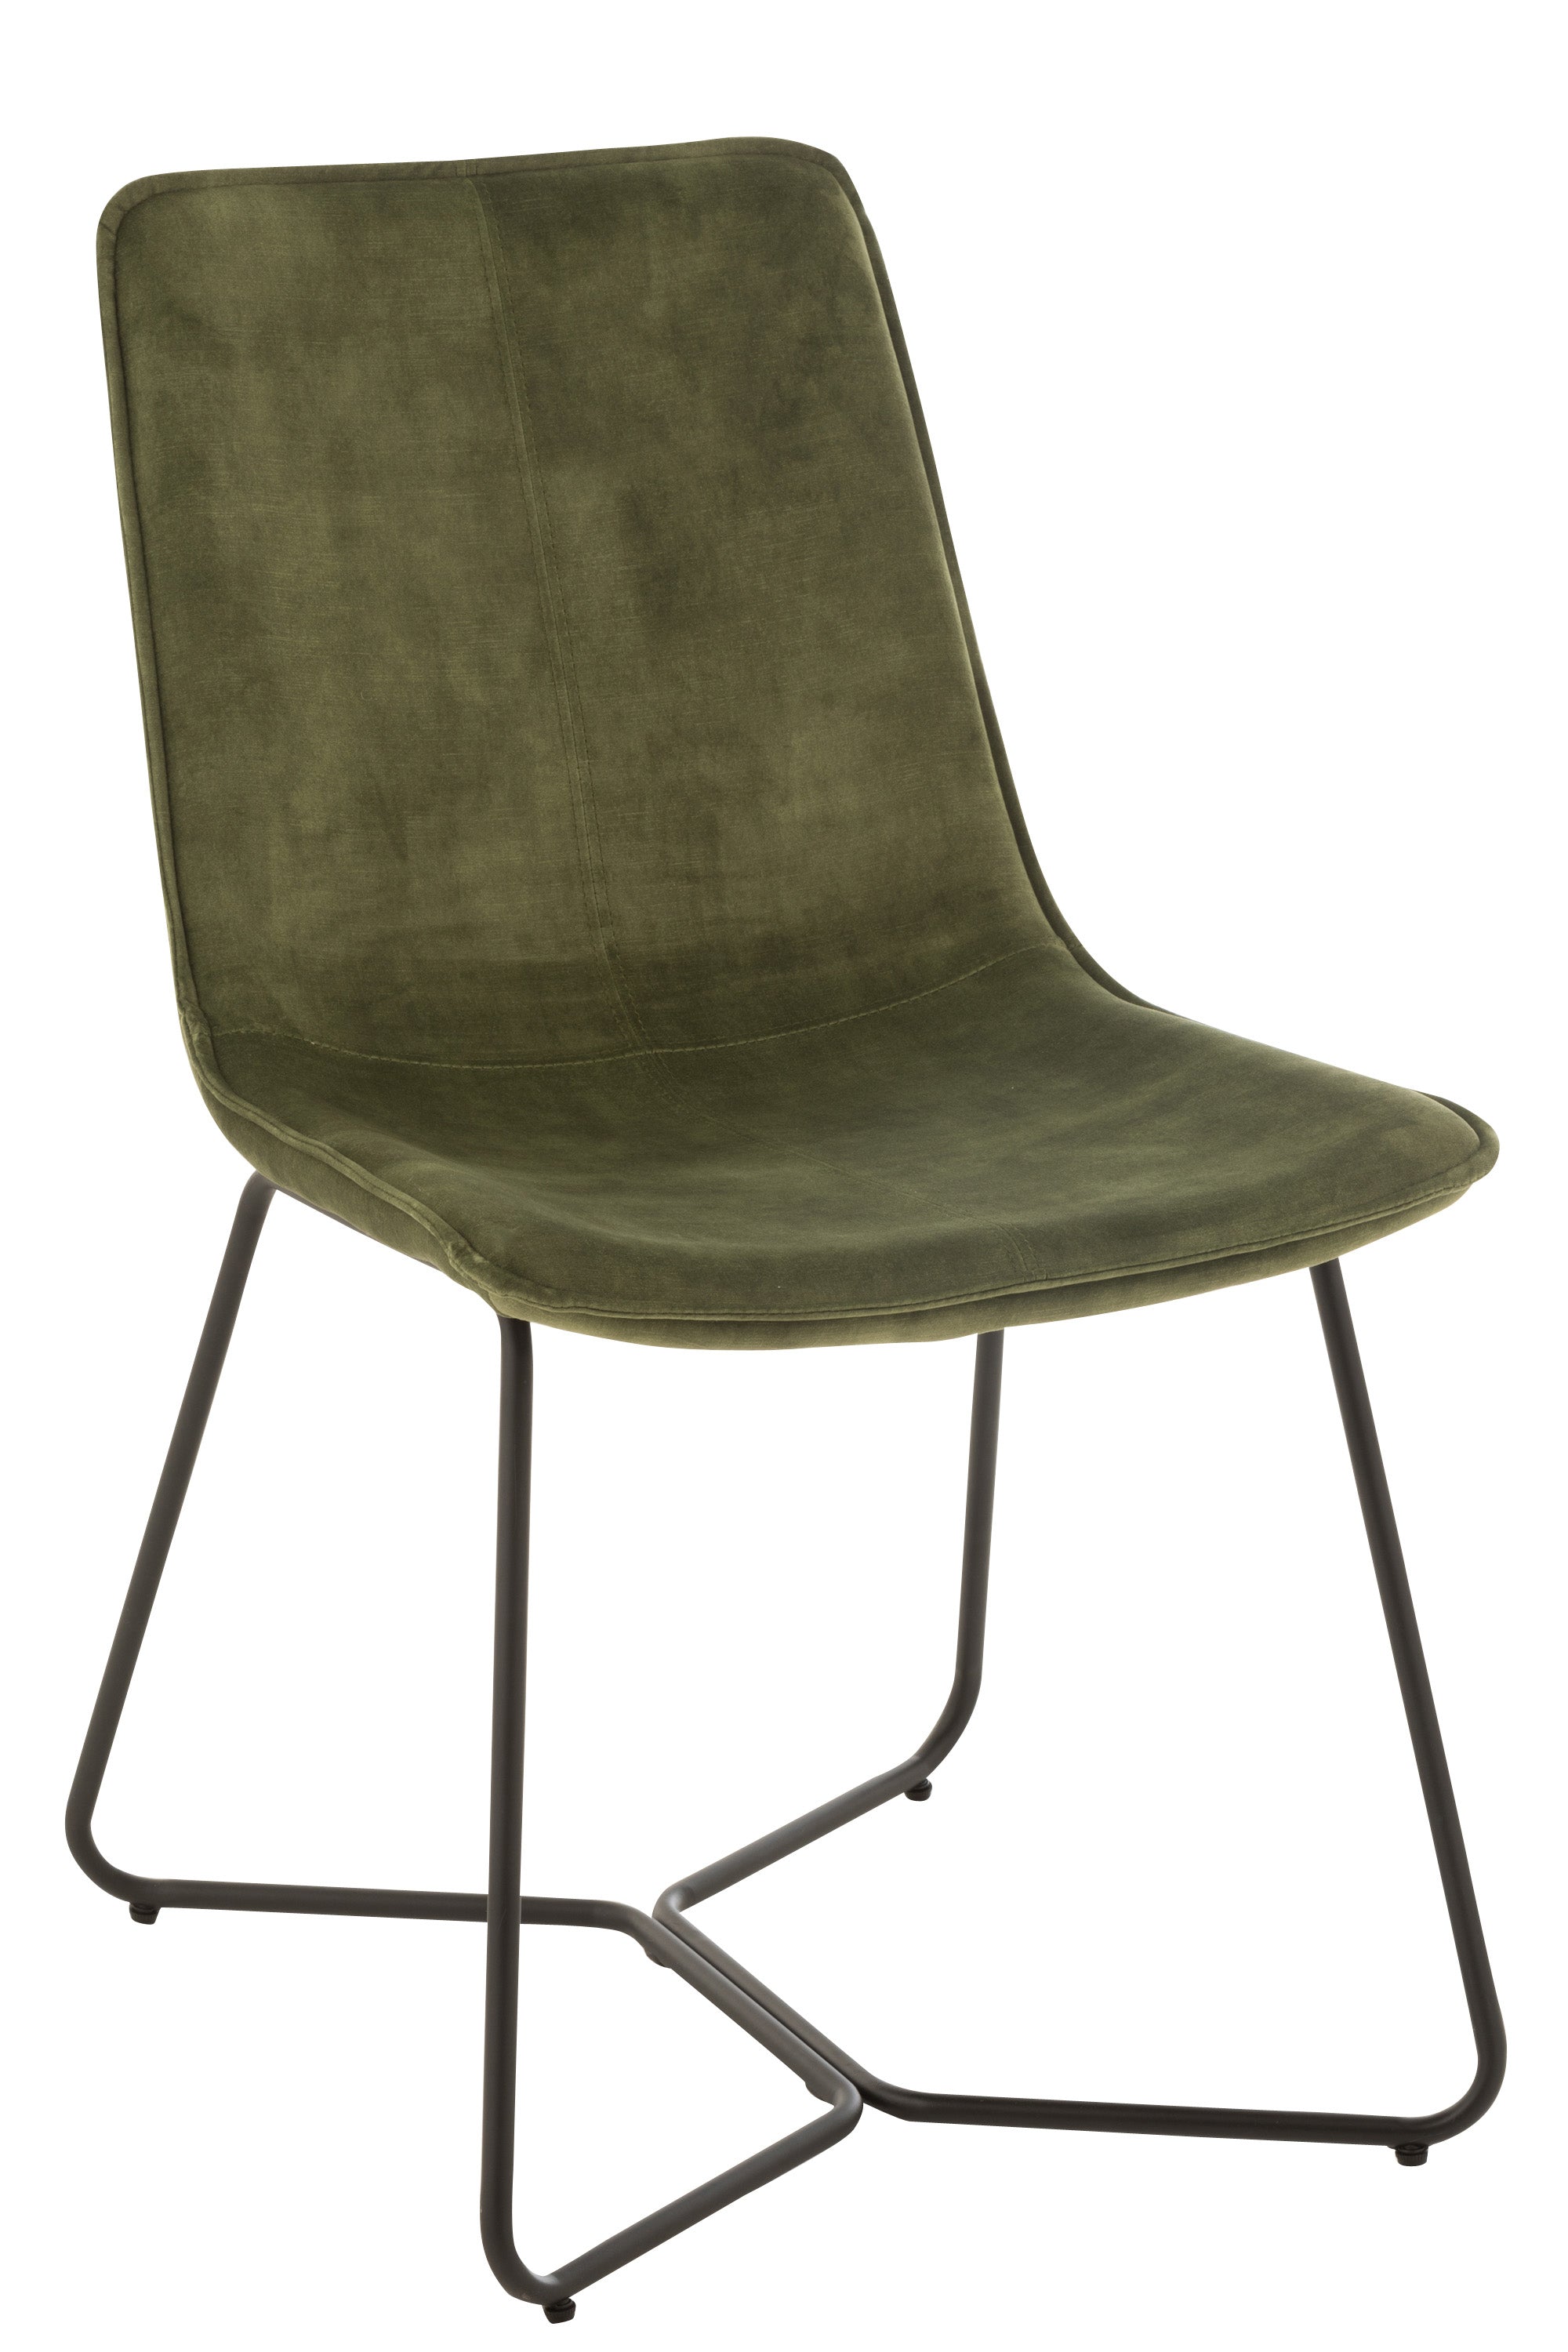 Stuhl mit schwarzem, kufenartigen Metallgestell, darauf eine gepolsterte Sitzschale, bezogen mit grüner Mikrofaser, Sitzschale in der Formgebung rechteckig, Lehne leicht nach hinten geneigt, Sitzfläche leicht vertieft.